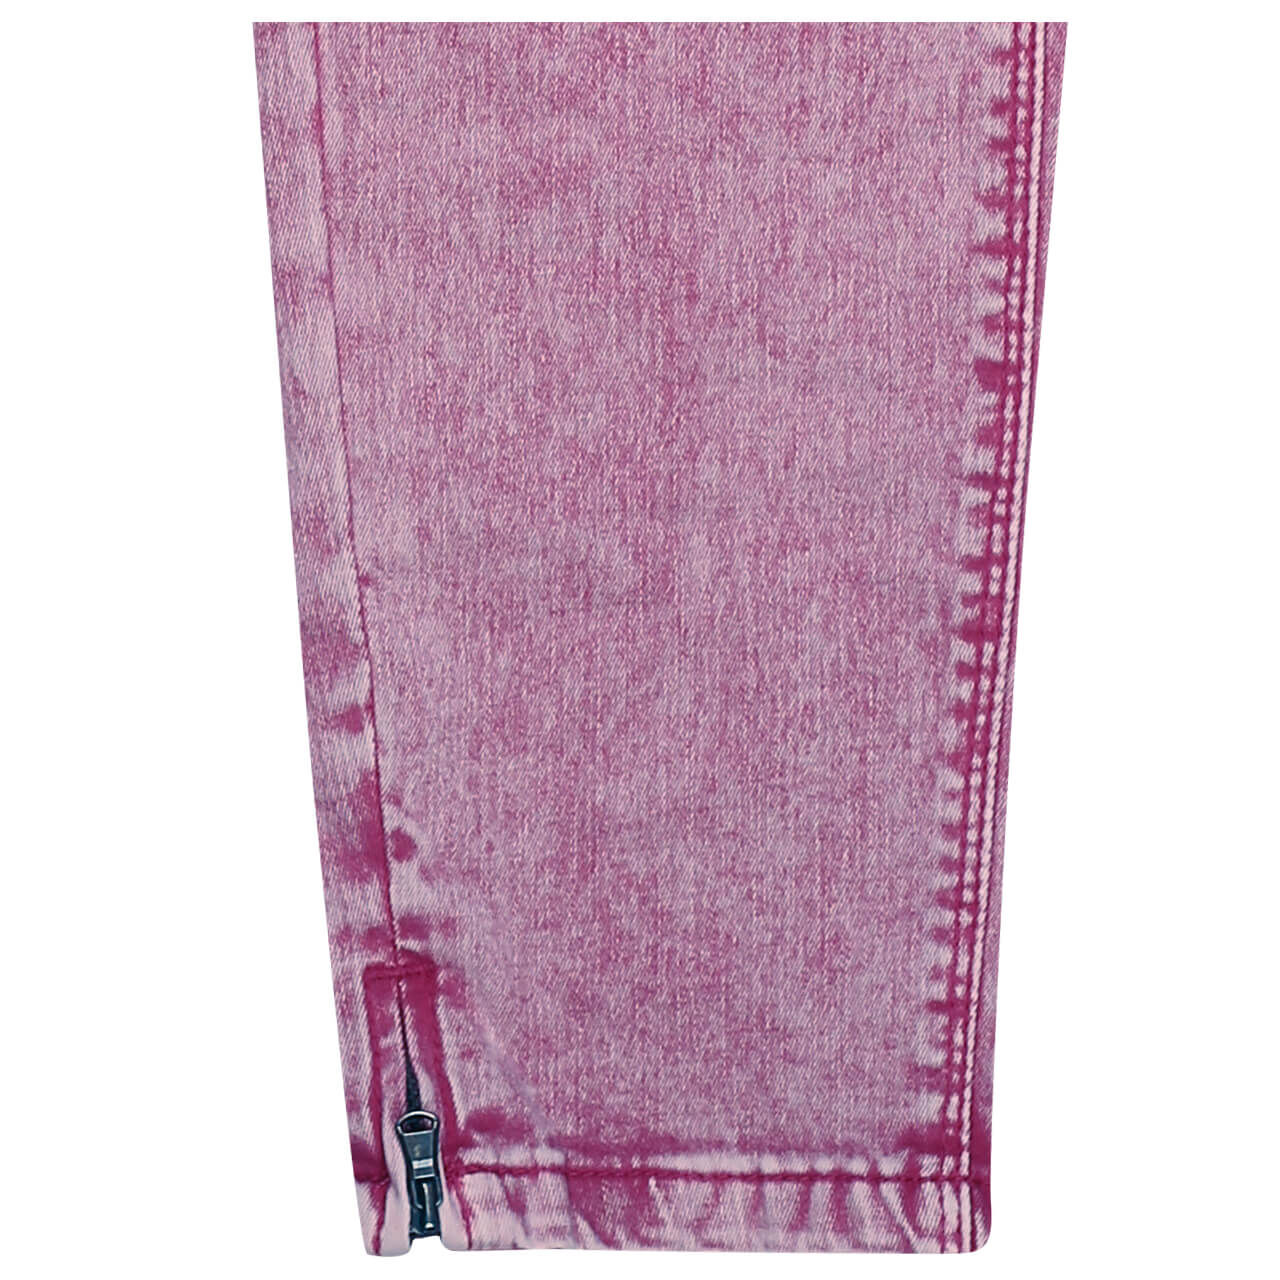 Buena Vista Italy V 7/8 Stretch Twill Baumwollhose für Damen in Pink, FarbNr.: 5076